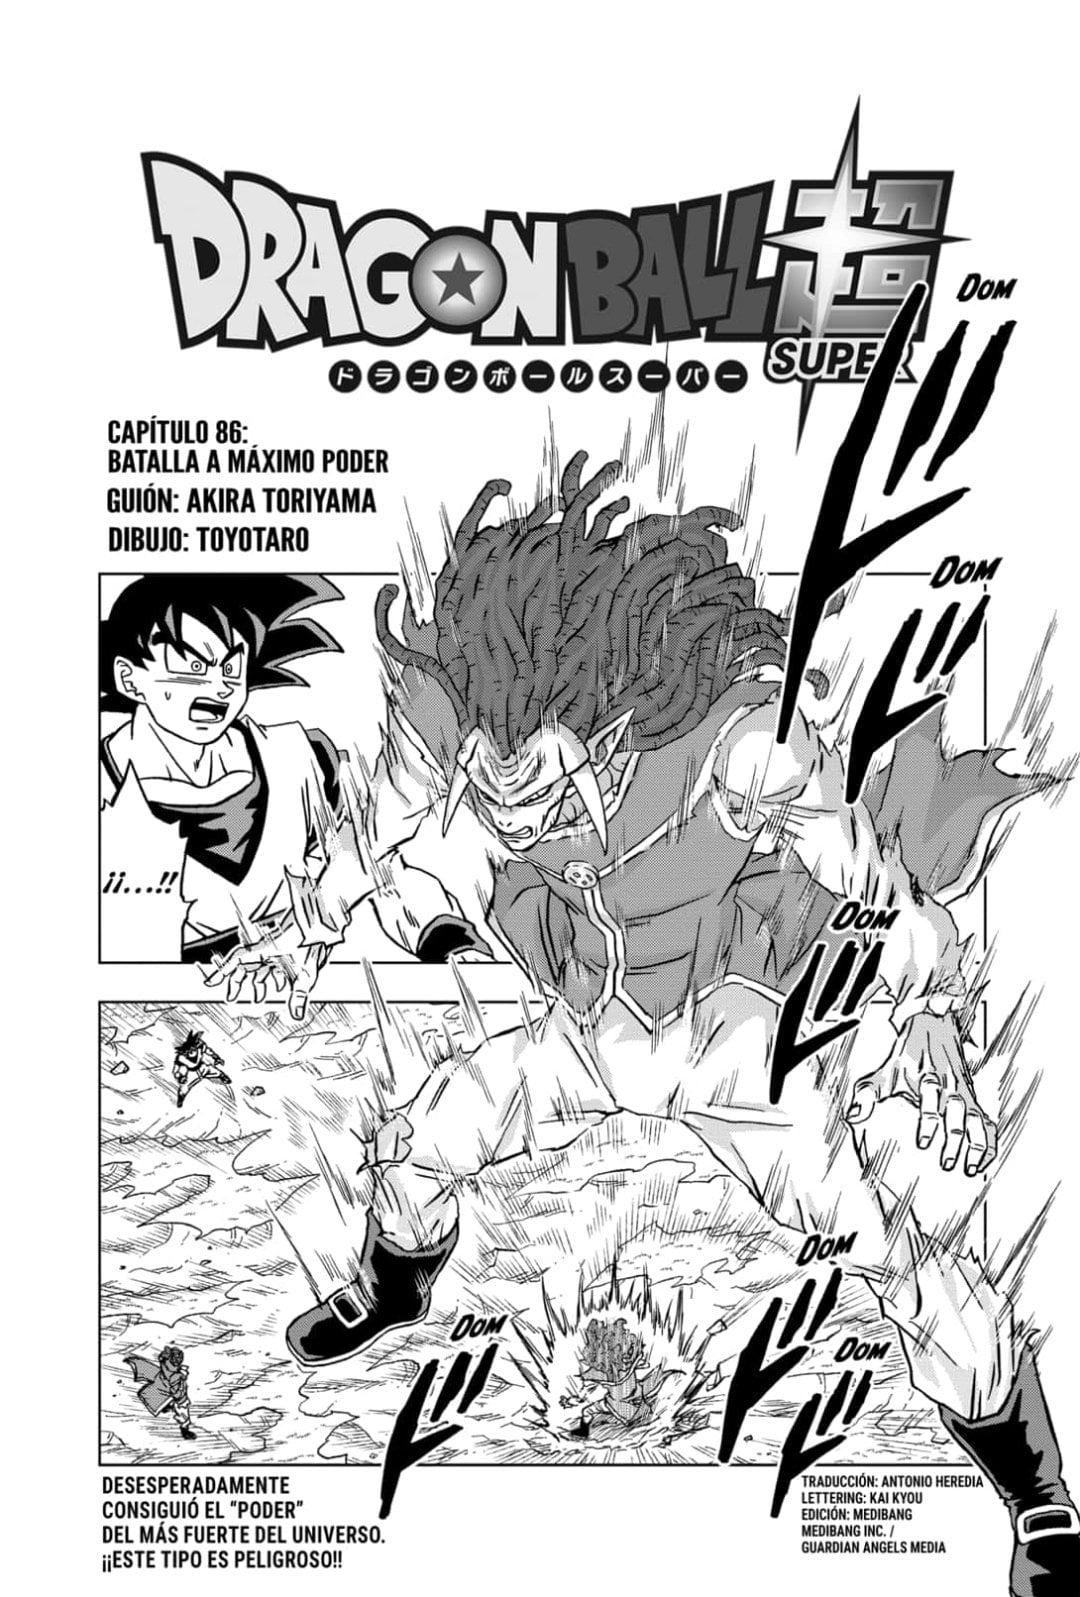 Dragon Ball Super Manga 86 Español Completo